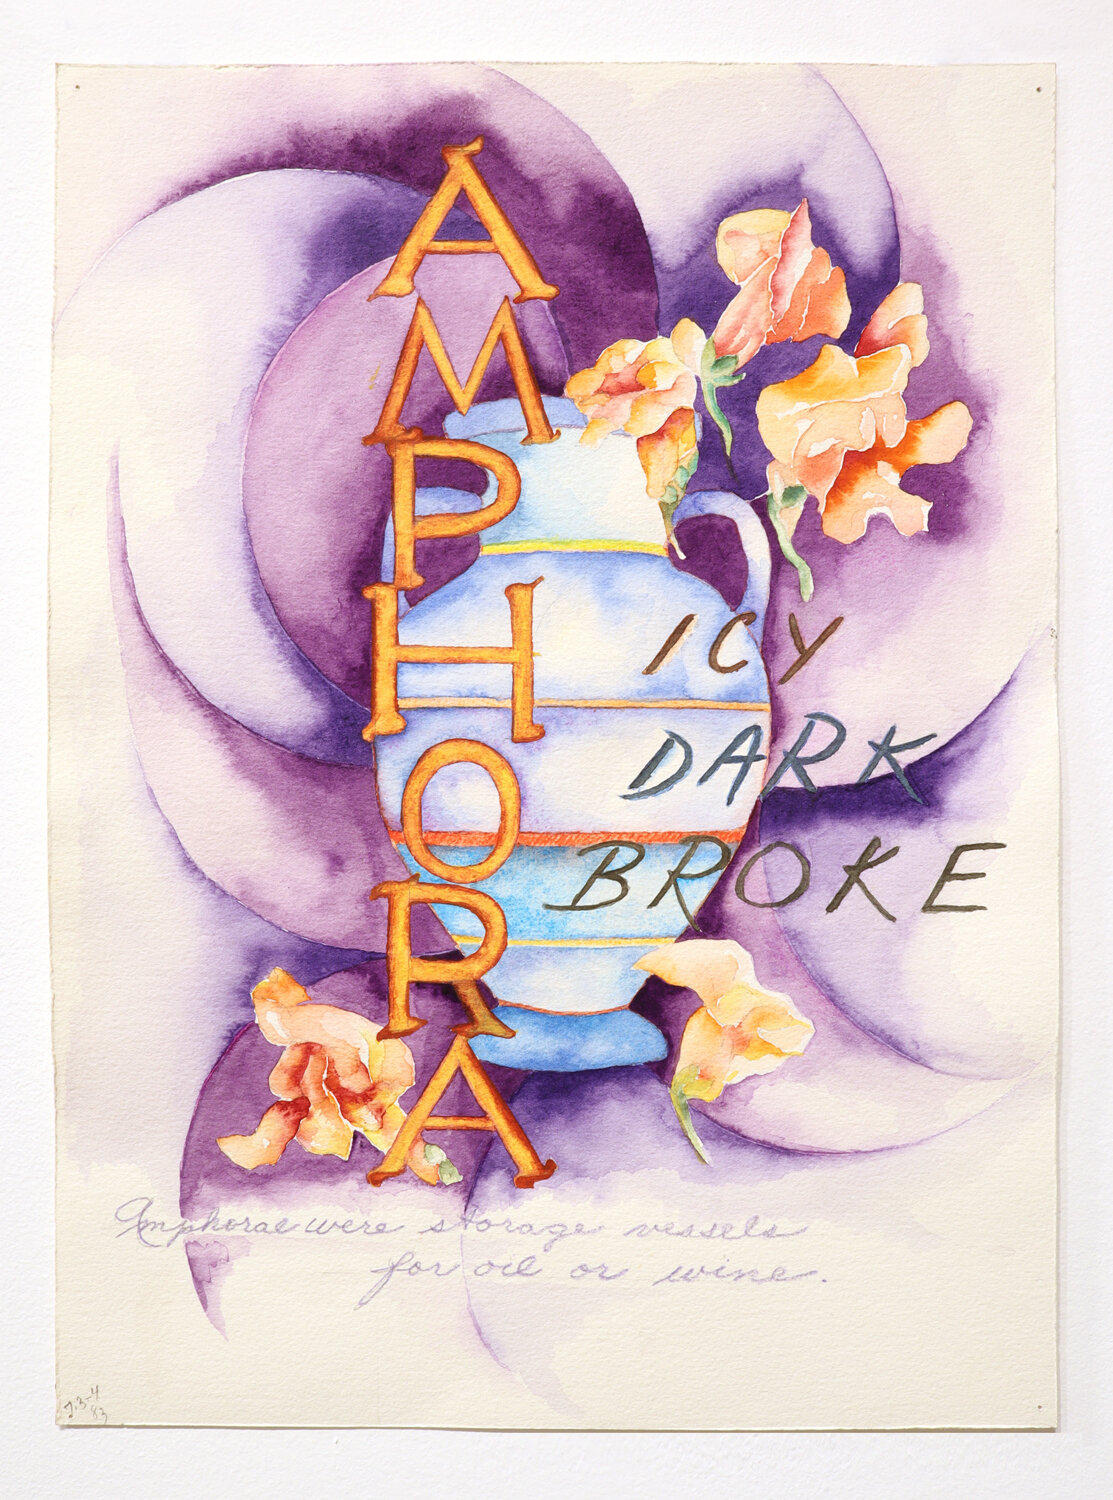 "Amphora/Icy Dark Broke", 1983